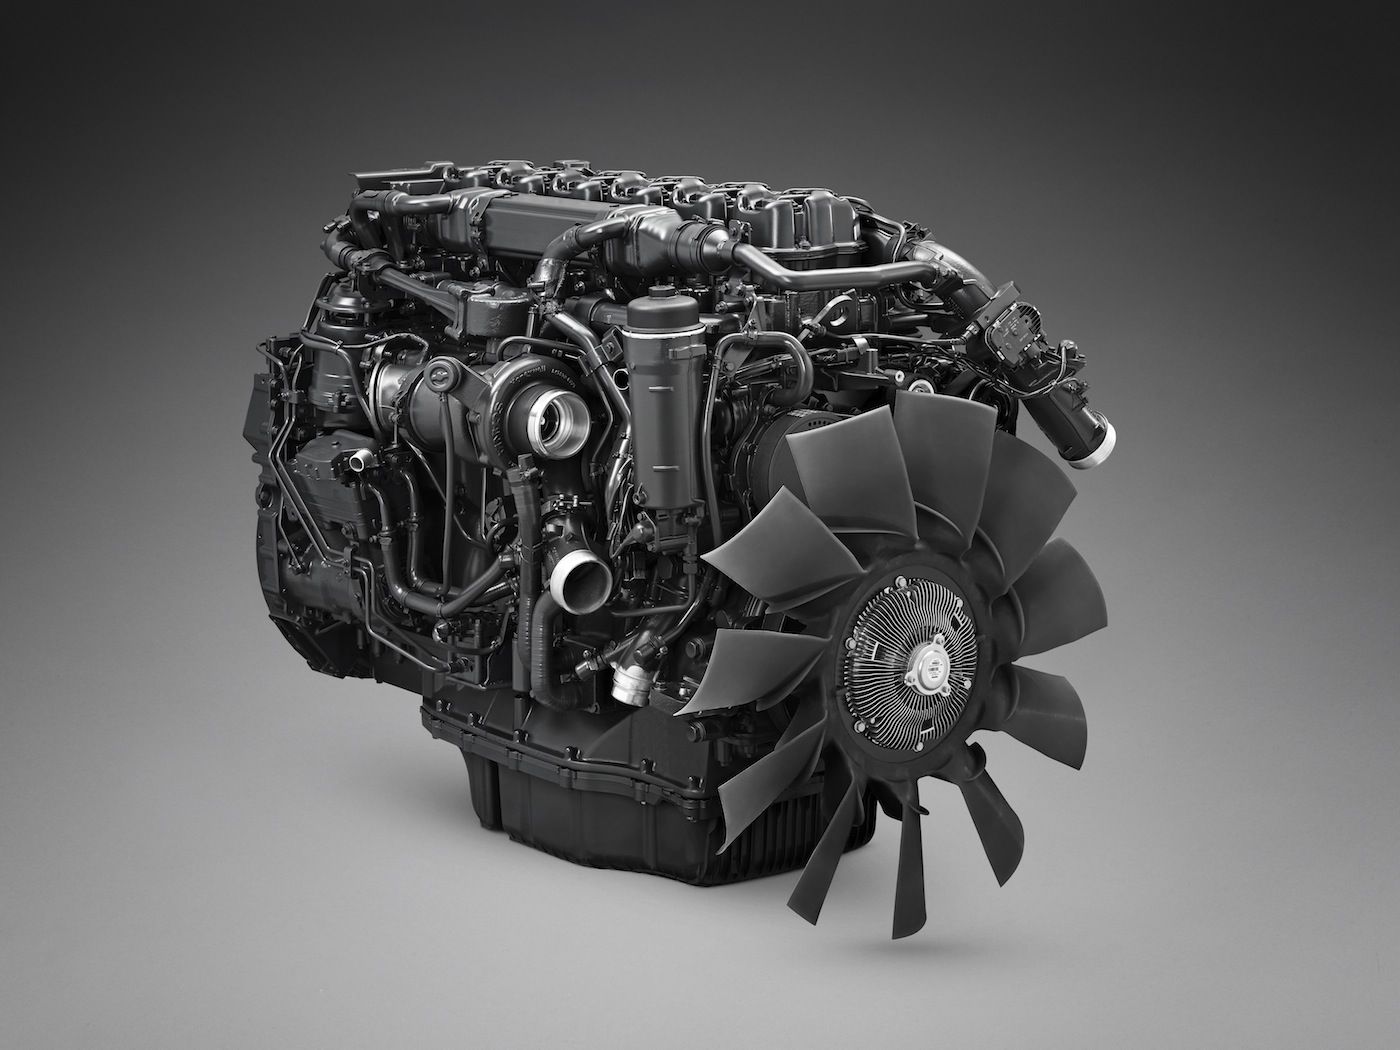 Scania 13 litre gas engine